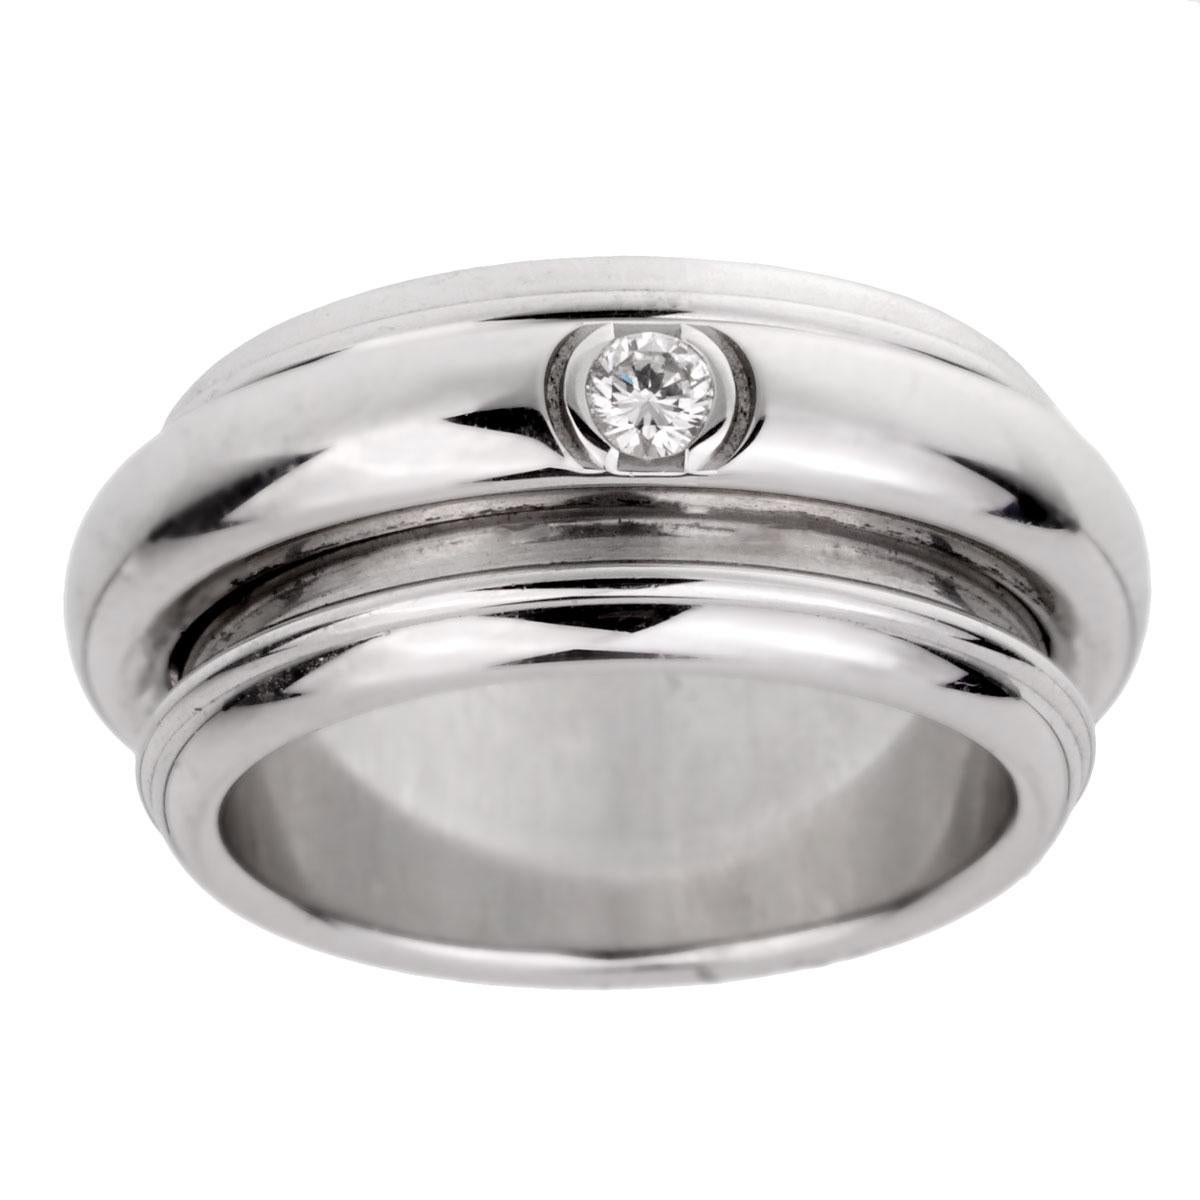 Une fabuleuse bague Possession de Piaget avec un anneau central tournant orné de 3 diamants ronds de taille brillant en or blanc 18k. La bague mesure une taille 9

Sku : 1910